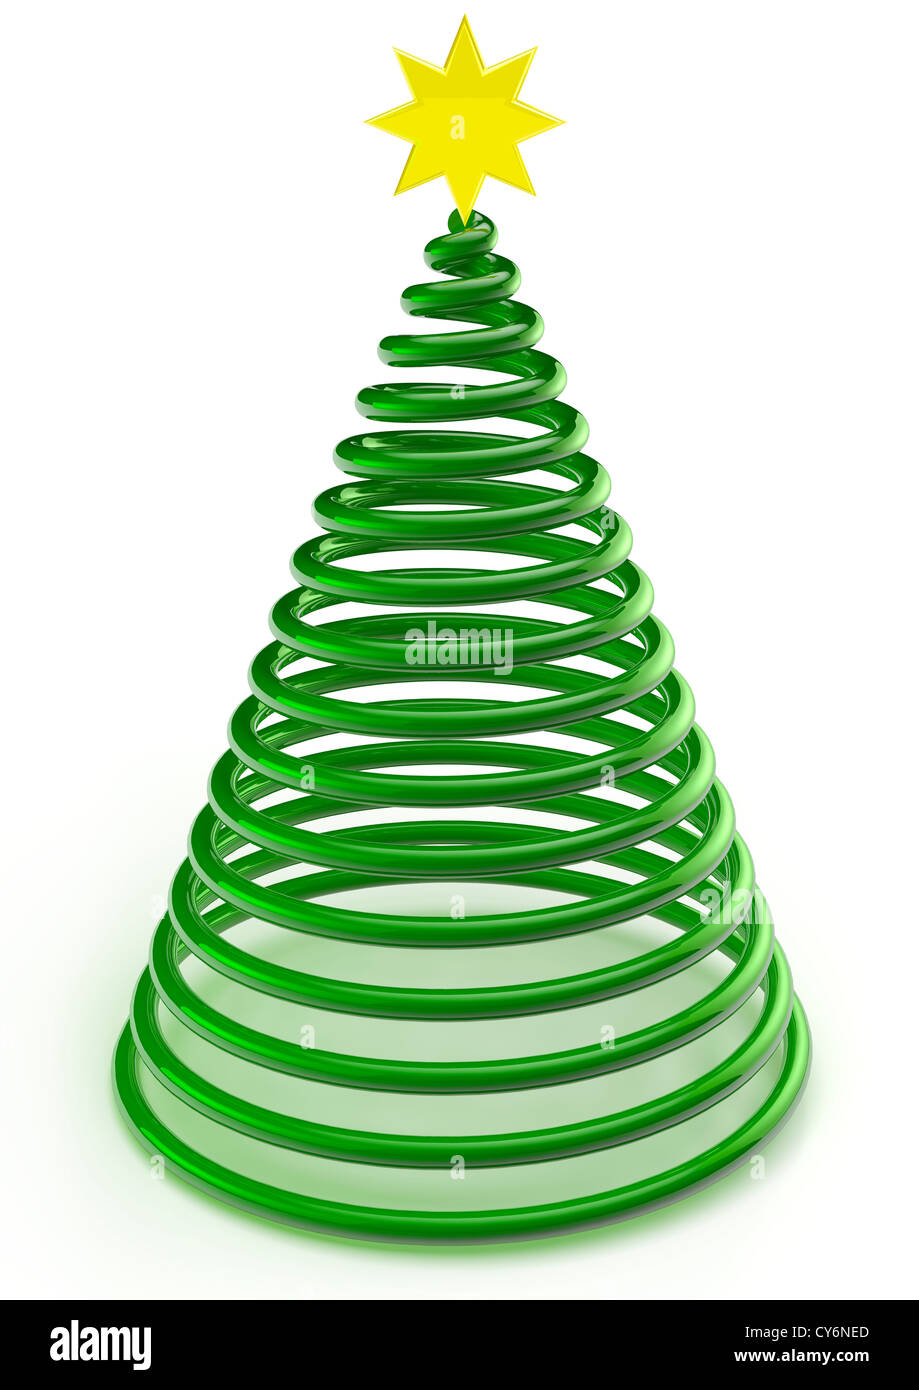 3D-Render Darstellung einer Spirale Weihnachtsbaum mit Stern auf weißem Hintergrund - Konzept Bild Stockfoto